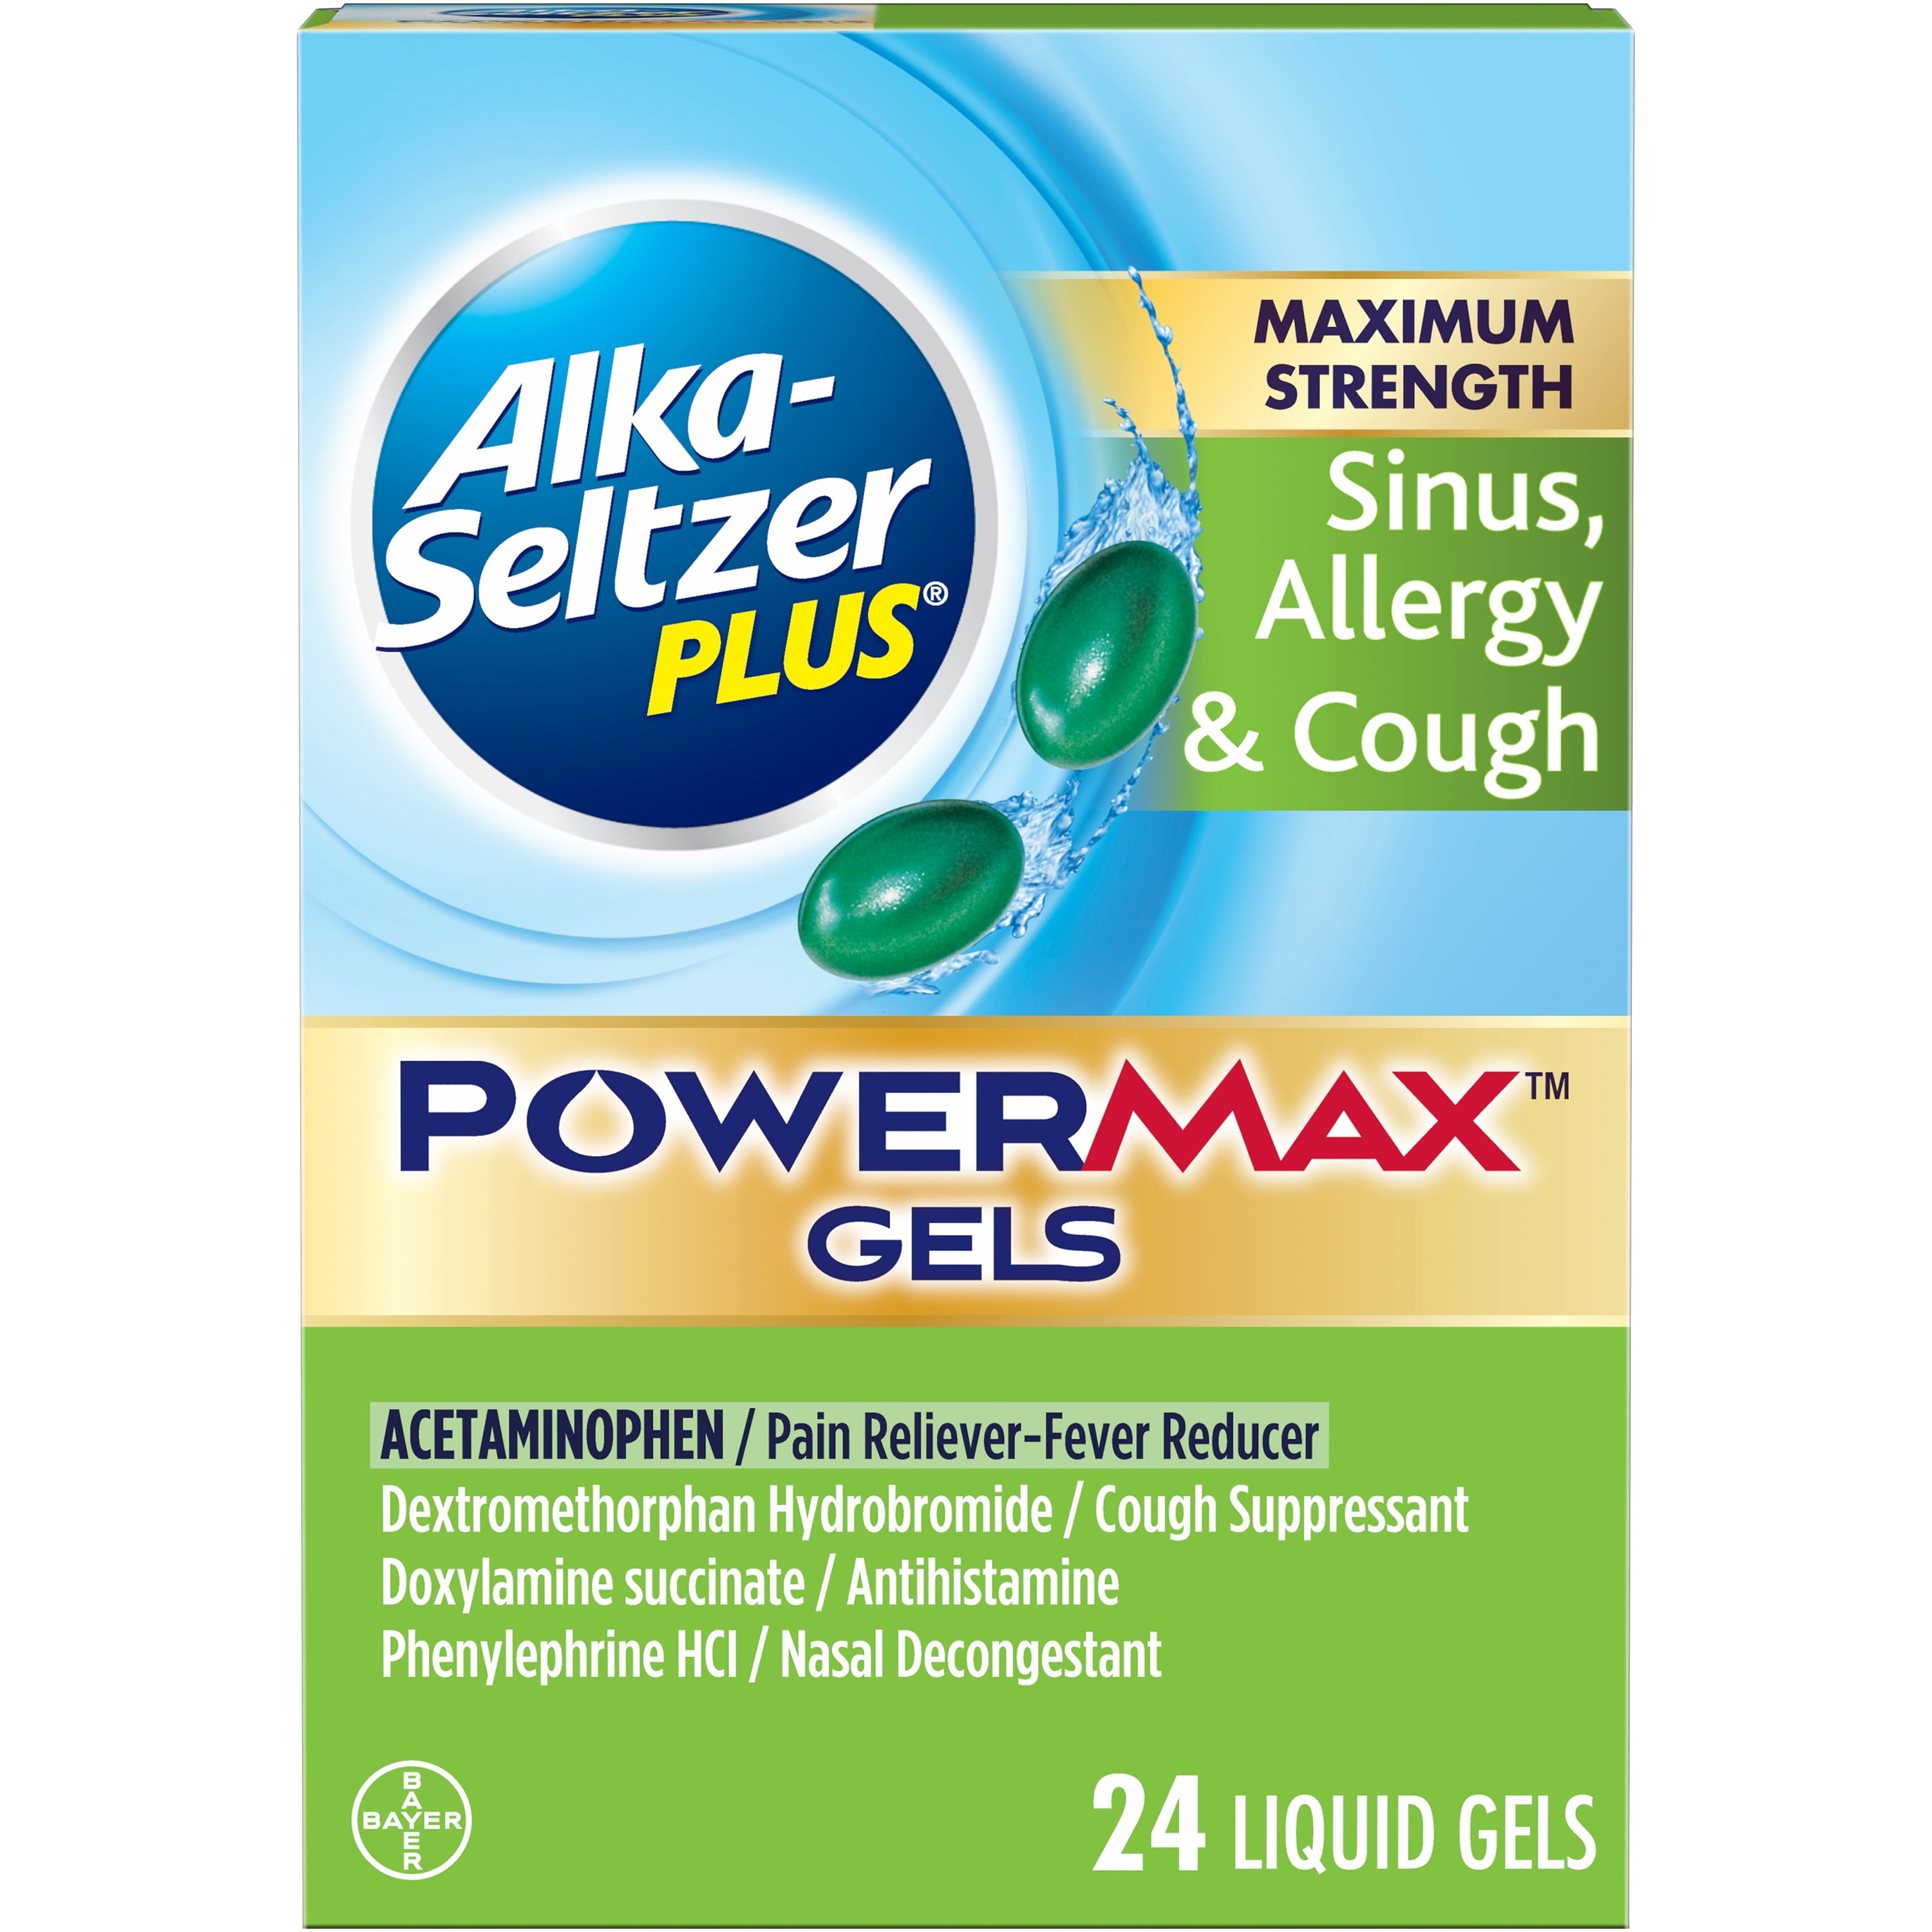 Alka-Seltzer Plus Maximum Strength Severe Sinus, Allergy & Cough Medicine, Powermax Liquid Gels, 24 Count